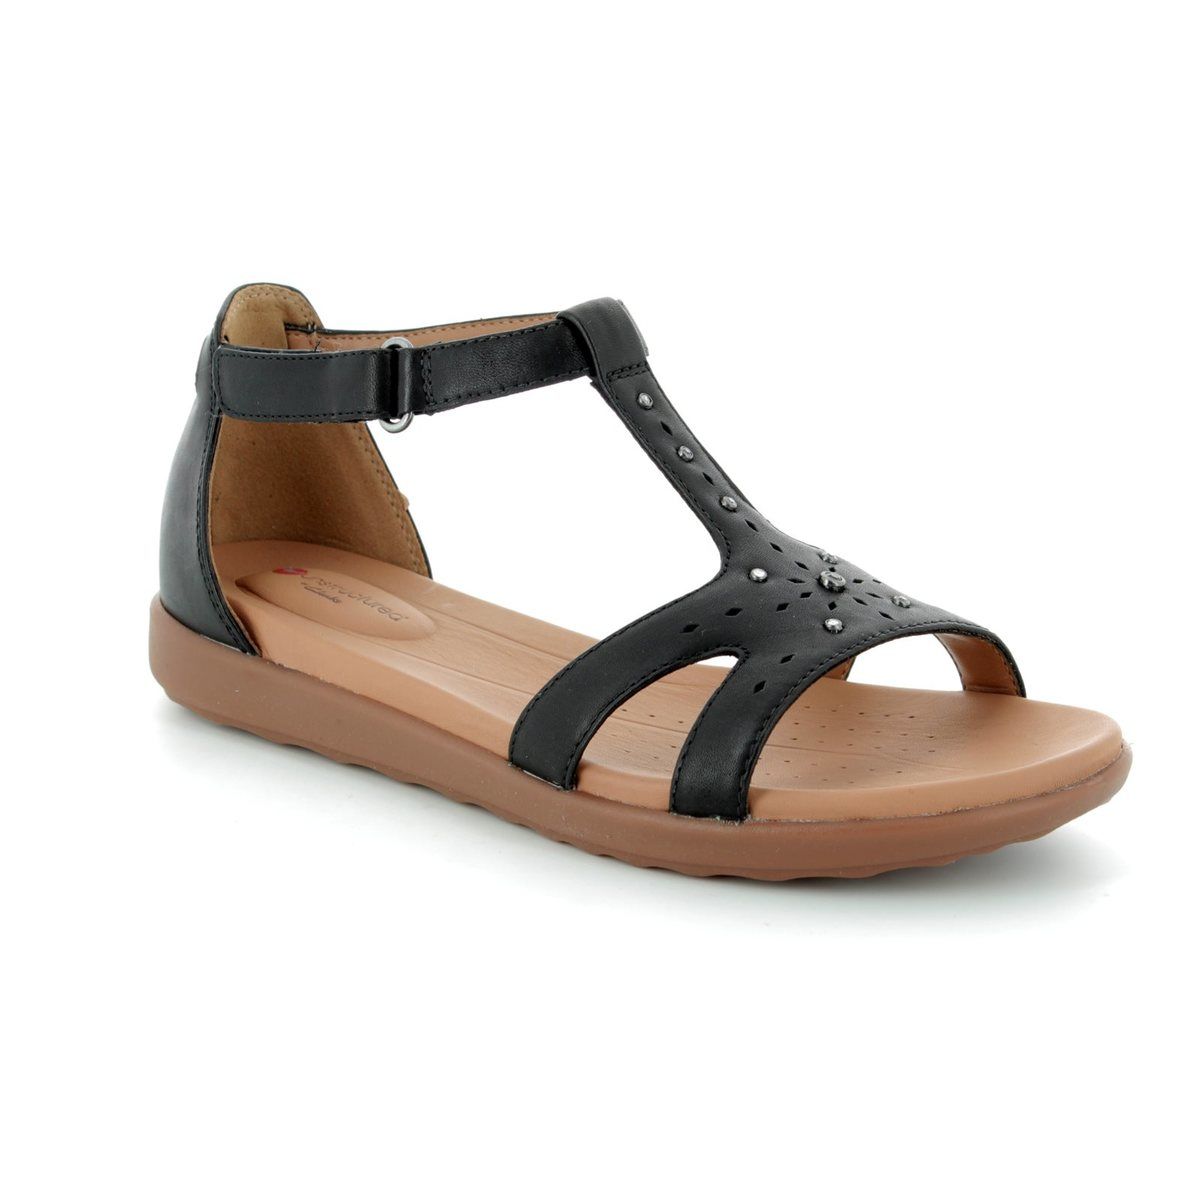 clarks summer sandals 2014